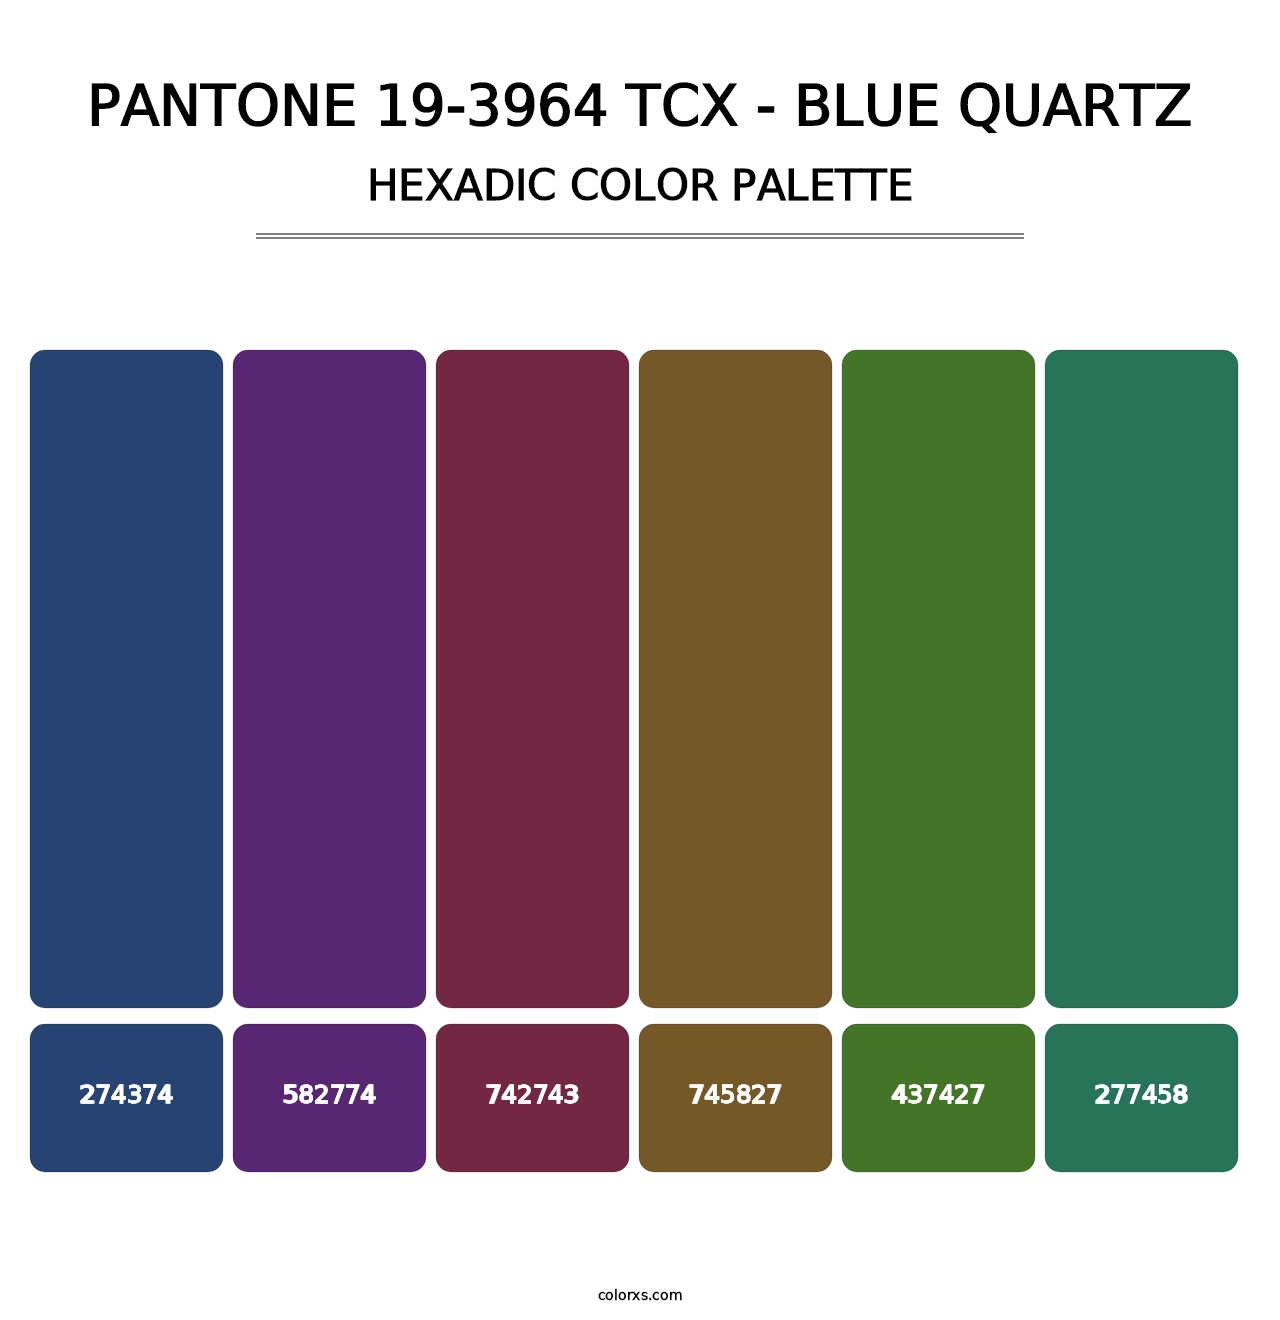 PANTONE 19-3964 TCX - Blue Quartz - Hexadic Color Palette